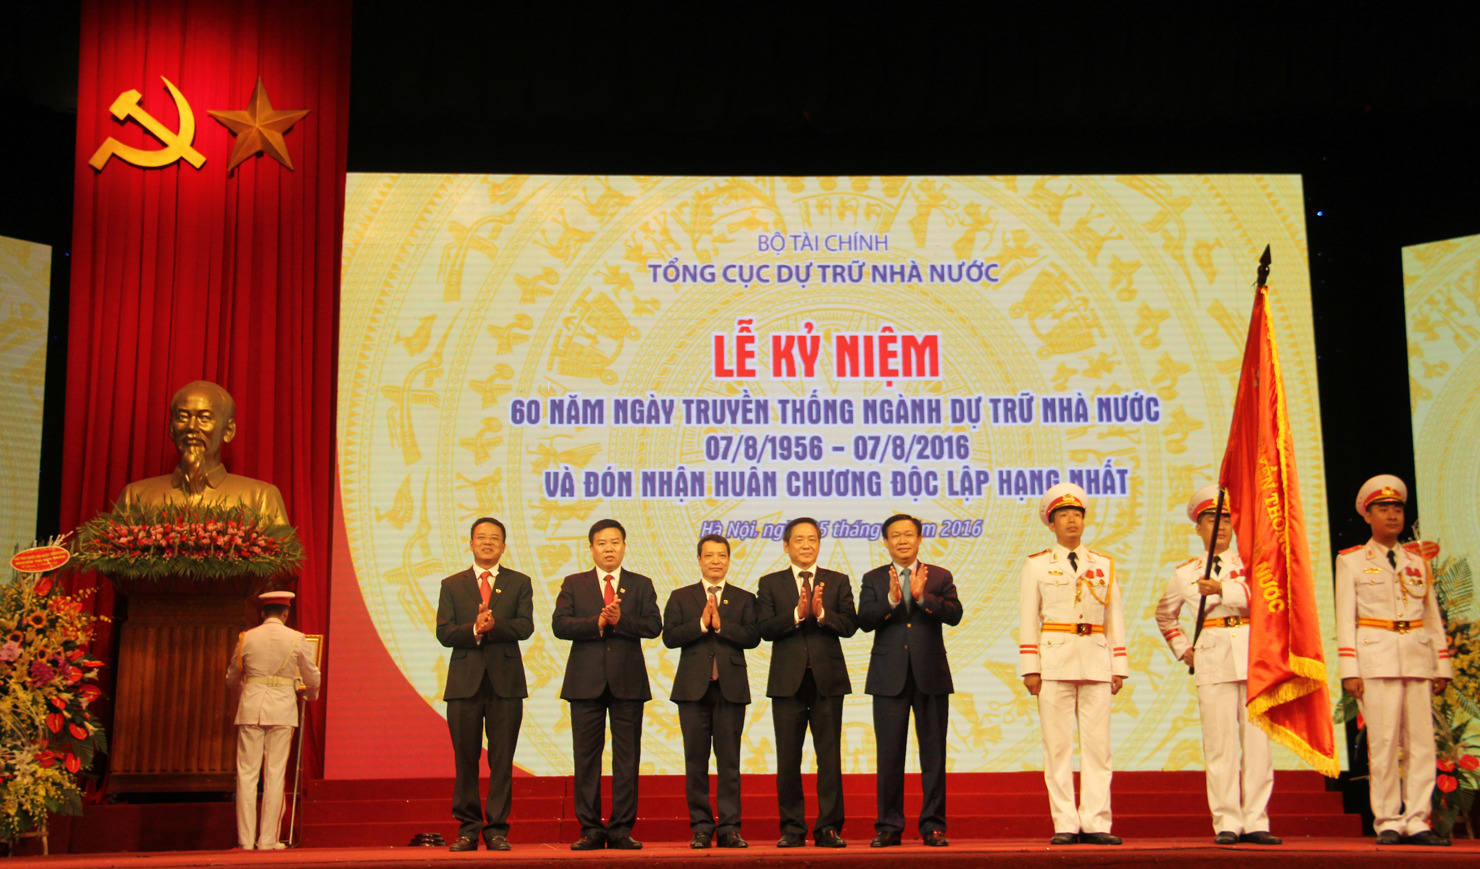 Phó Thủ tướng Chính phủ Vương Đình Huệ trao Huân chương Độc lập hạng Nhất (lần 2) cho Tổng cục DTNN.